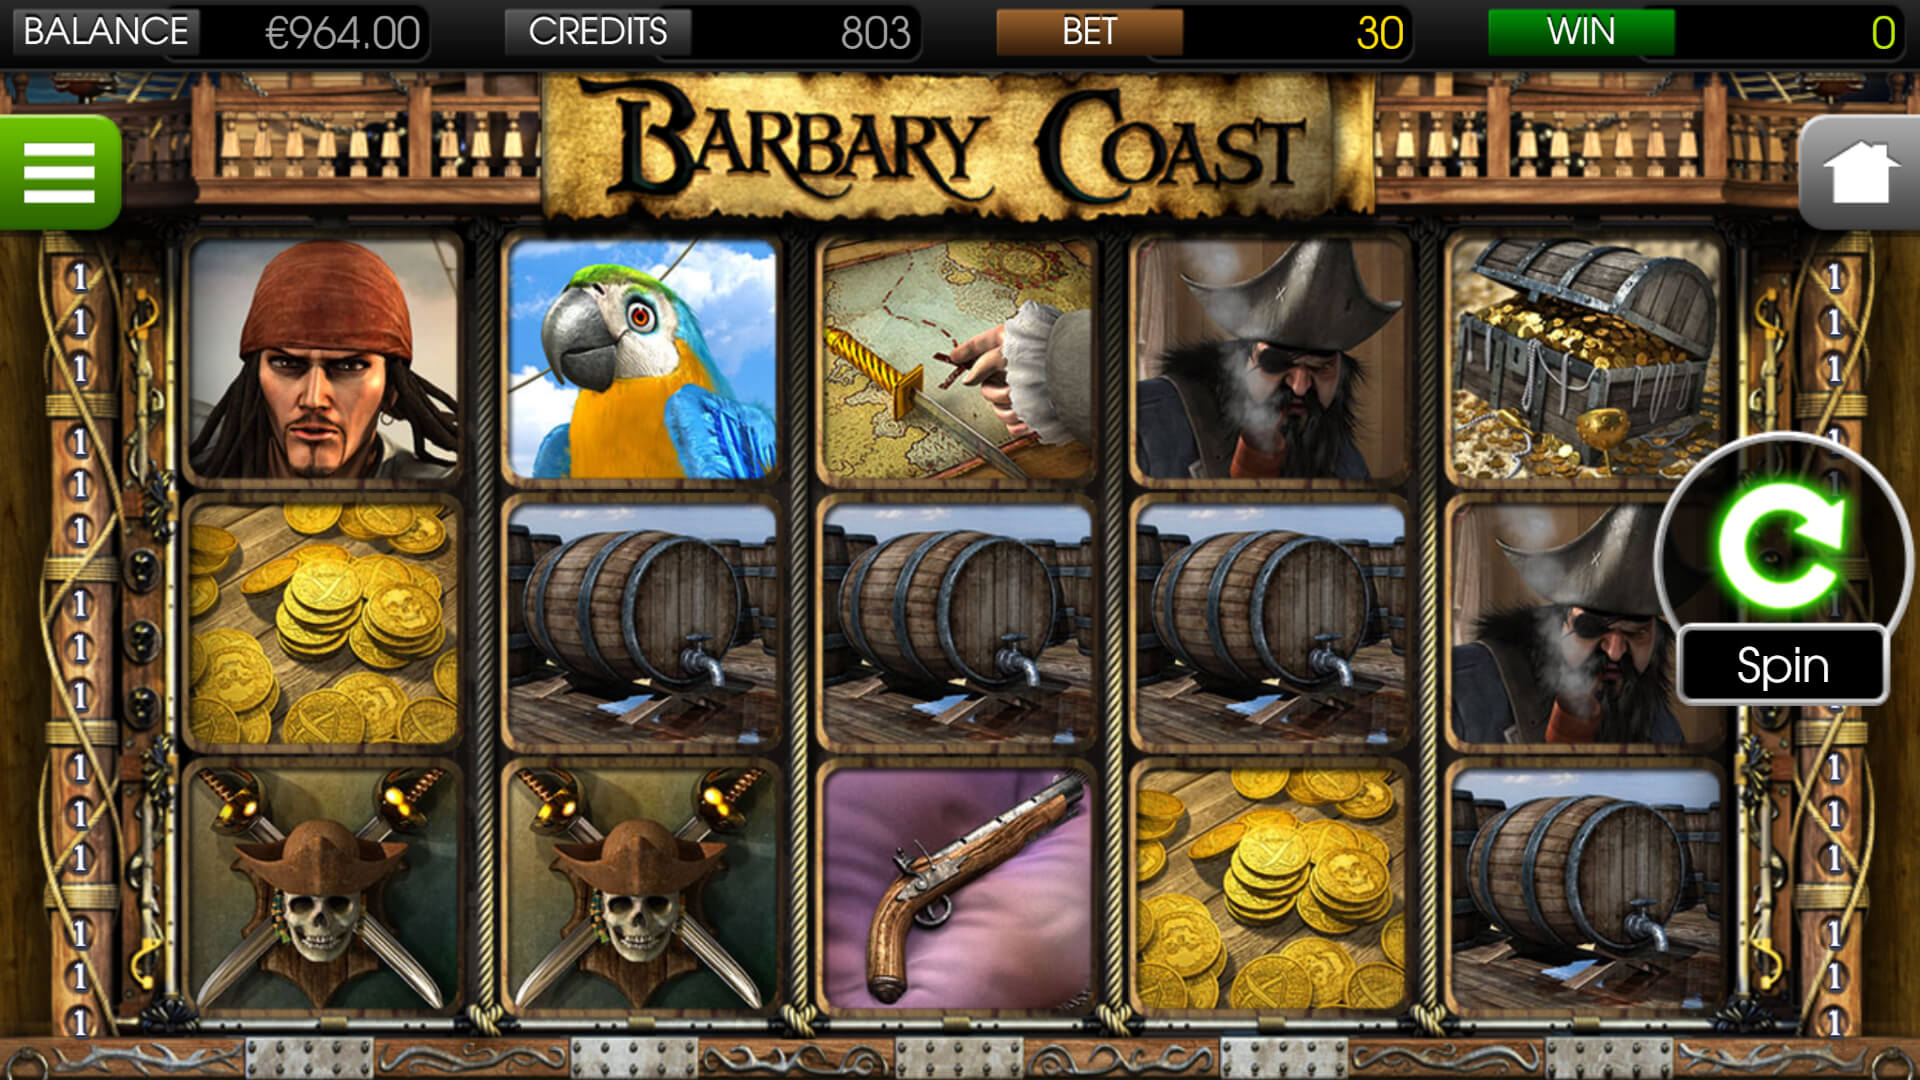 Barbary coast